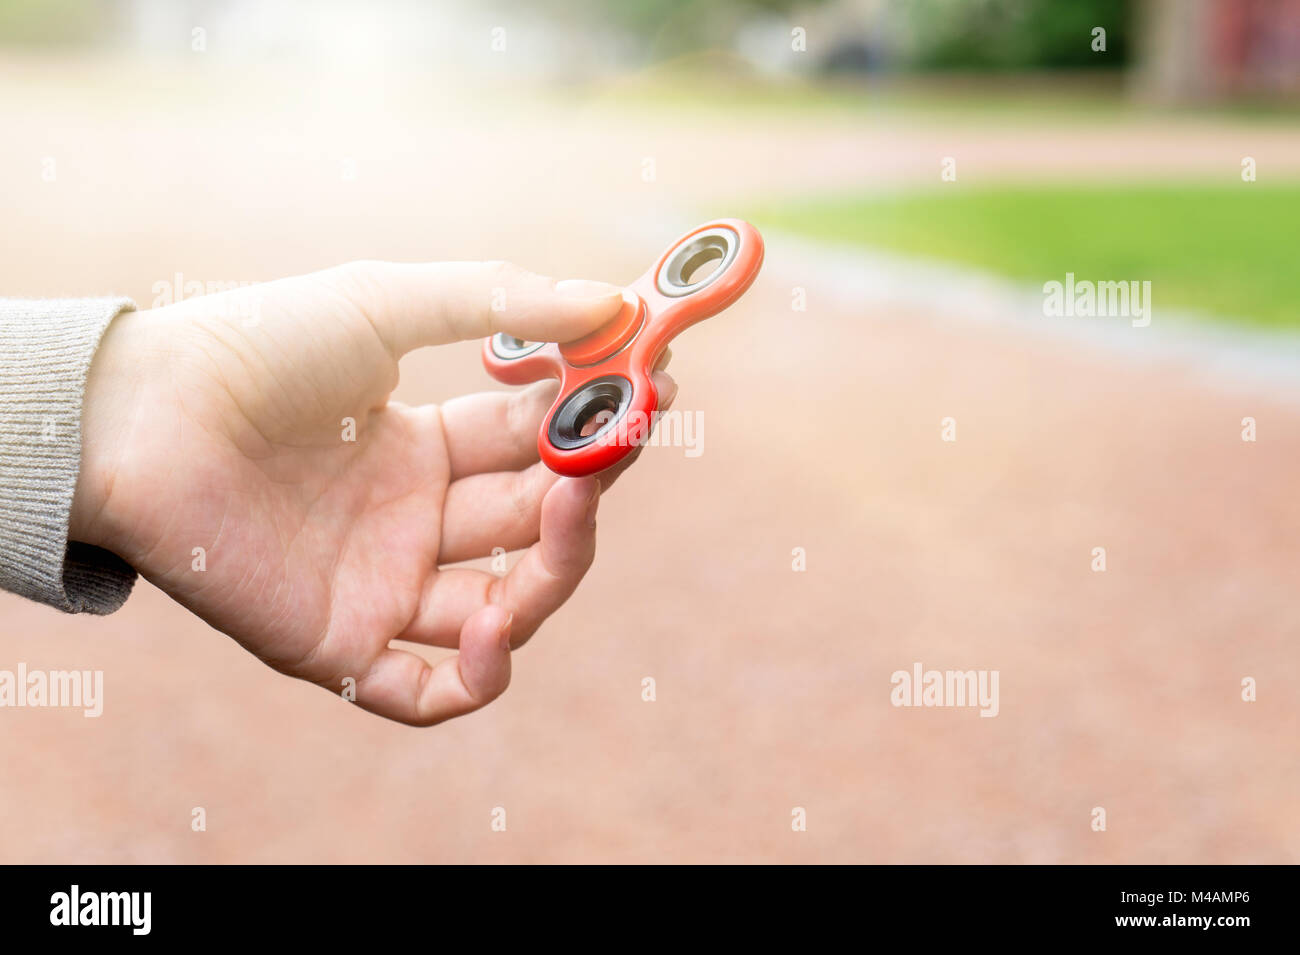 Frau oder ein Mädchen mit roten zappeln Spinner in der Hand an einem sonnigen Sommertag in einem Park. Stockfoto